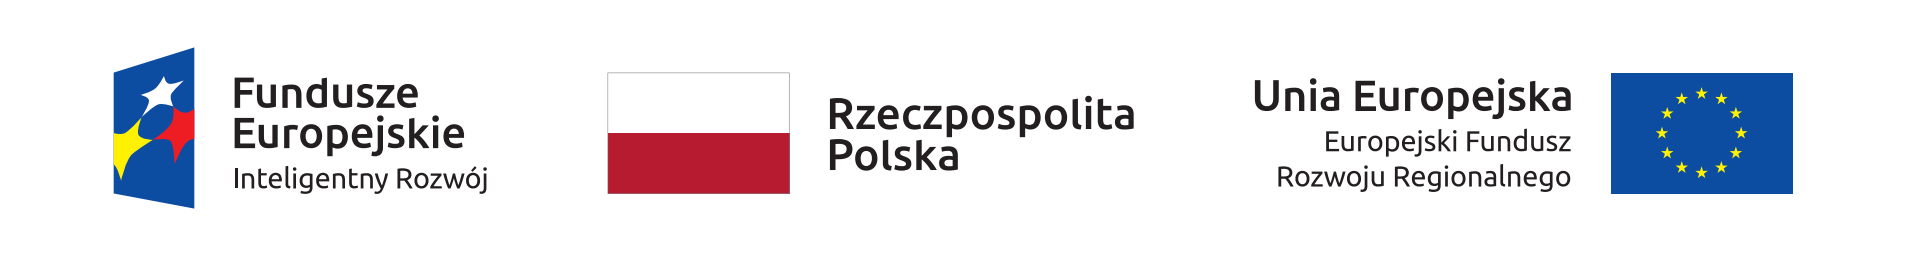 Logotypy Dotacja